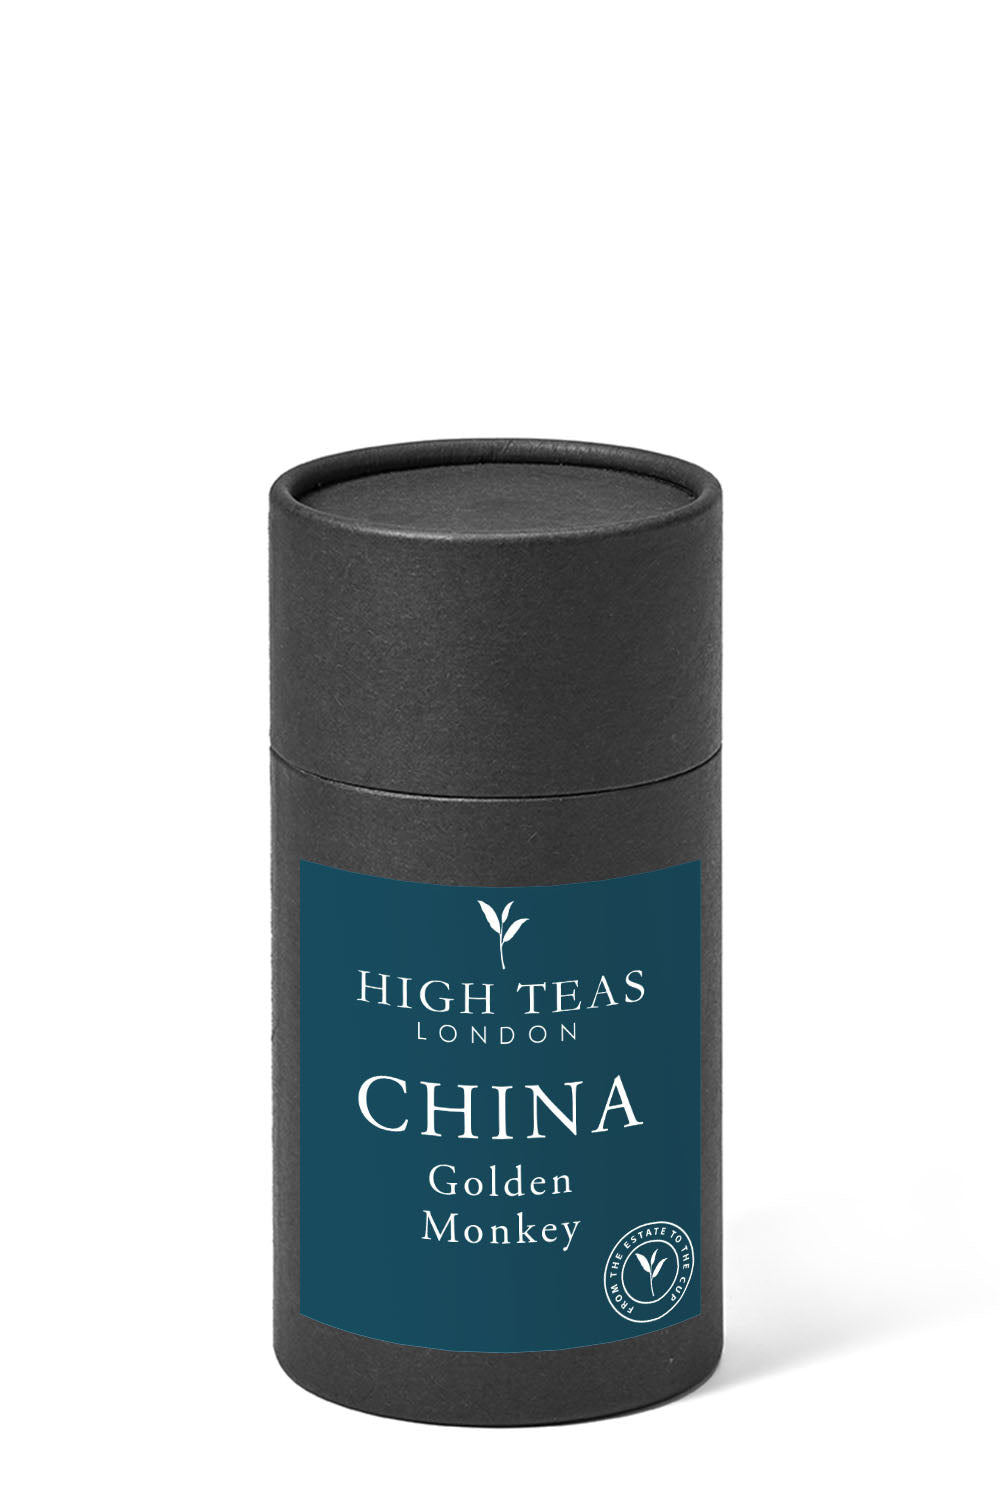 Golden Monkey - Jin Hou Cha-60g gift-Loose Leaf Tea-High Teas